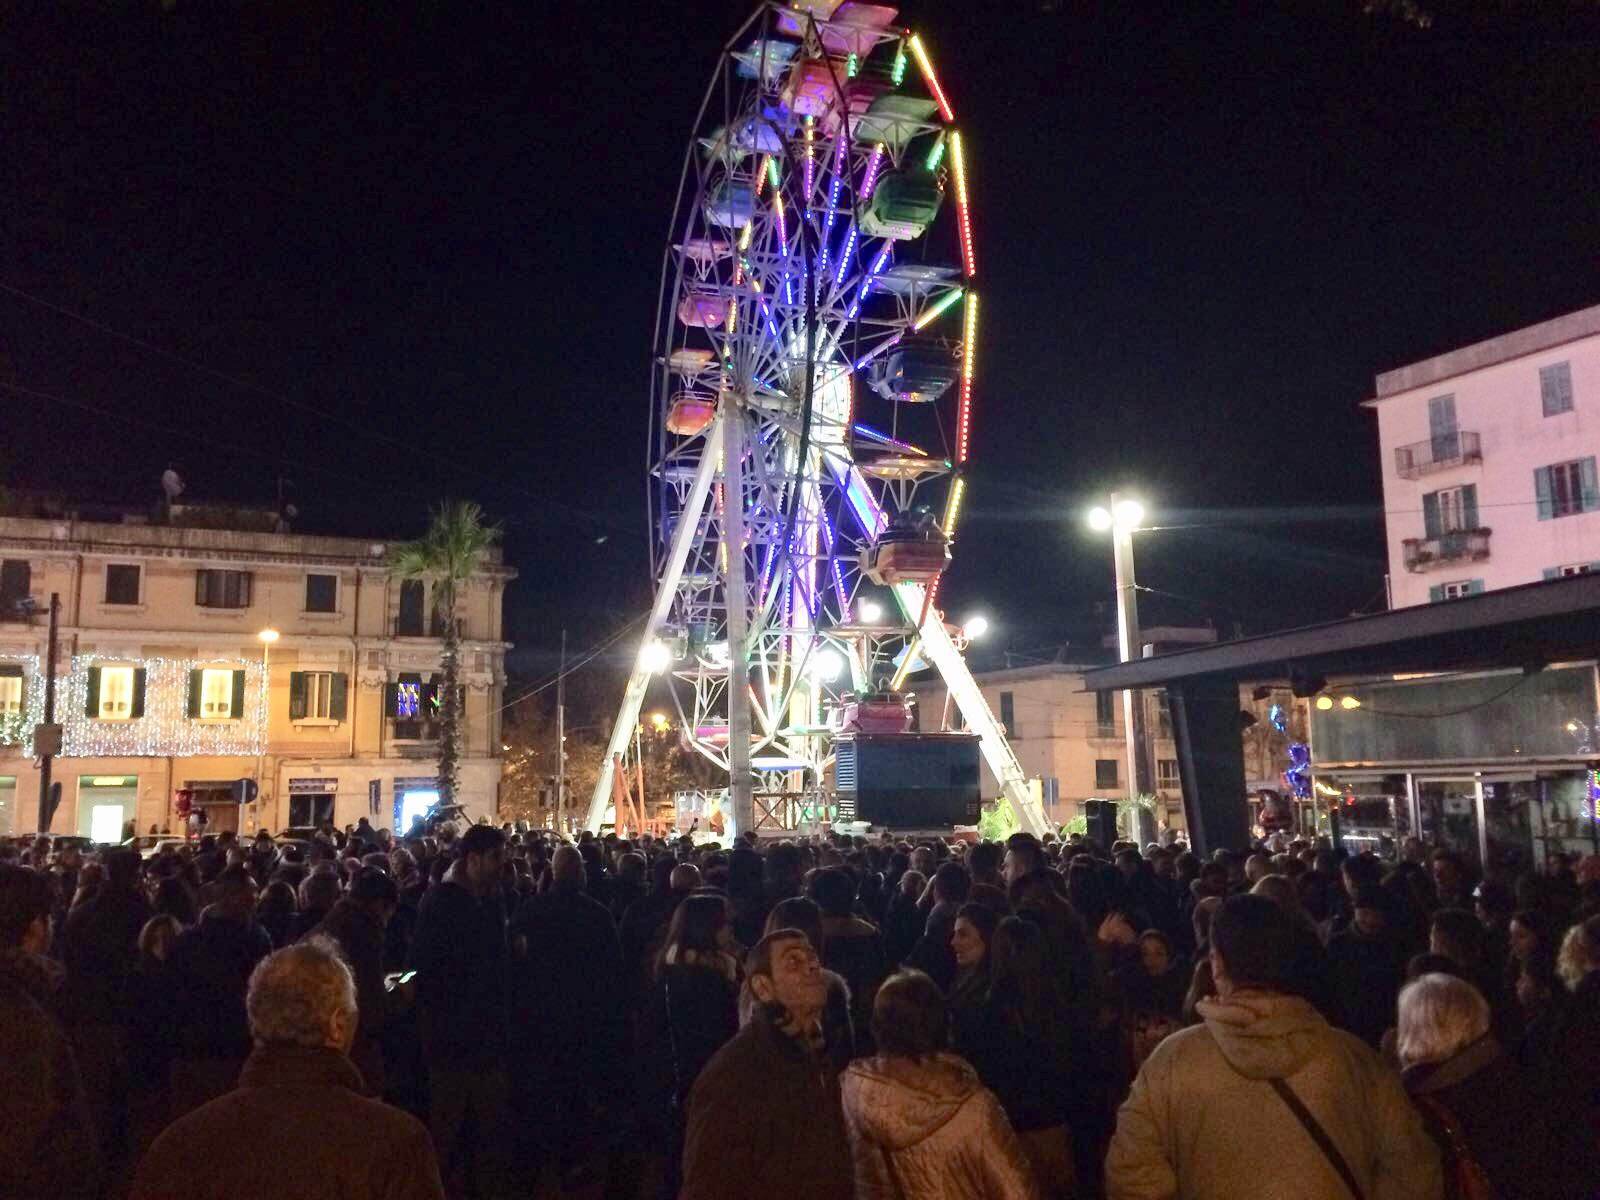 Natale a Messina, oggi il concerto dei Tinturia. Piazza Cairoli invasa, Picciotto: “Mai vista tanta gente nel centro commerciale della città”